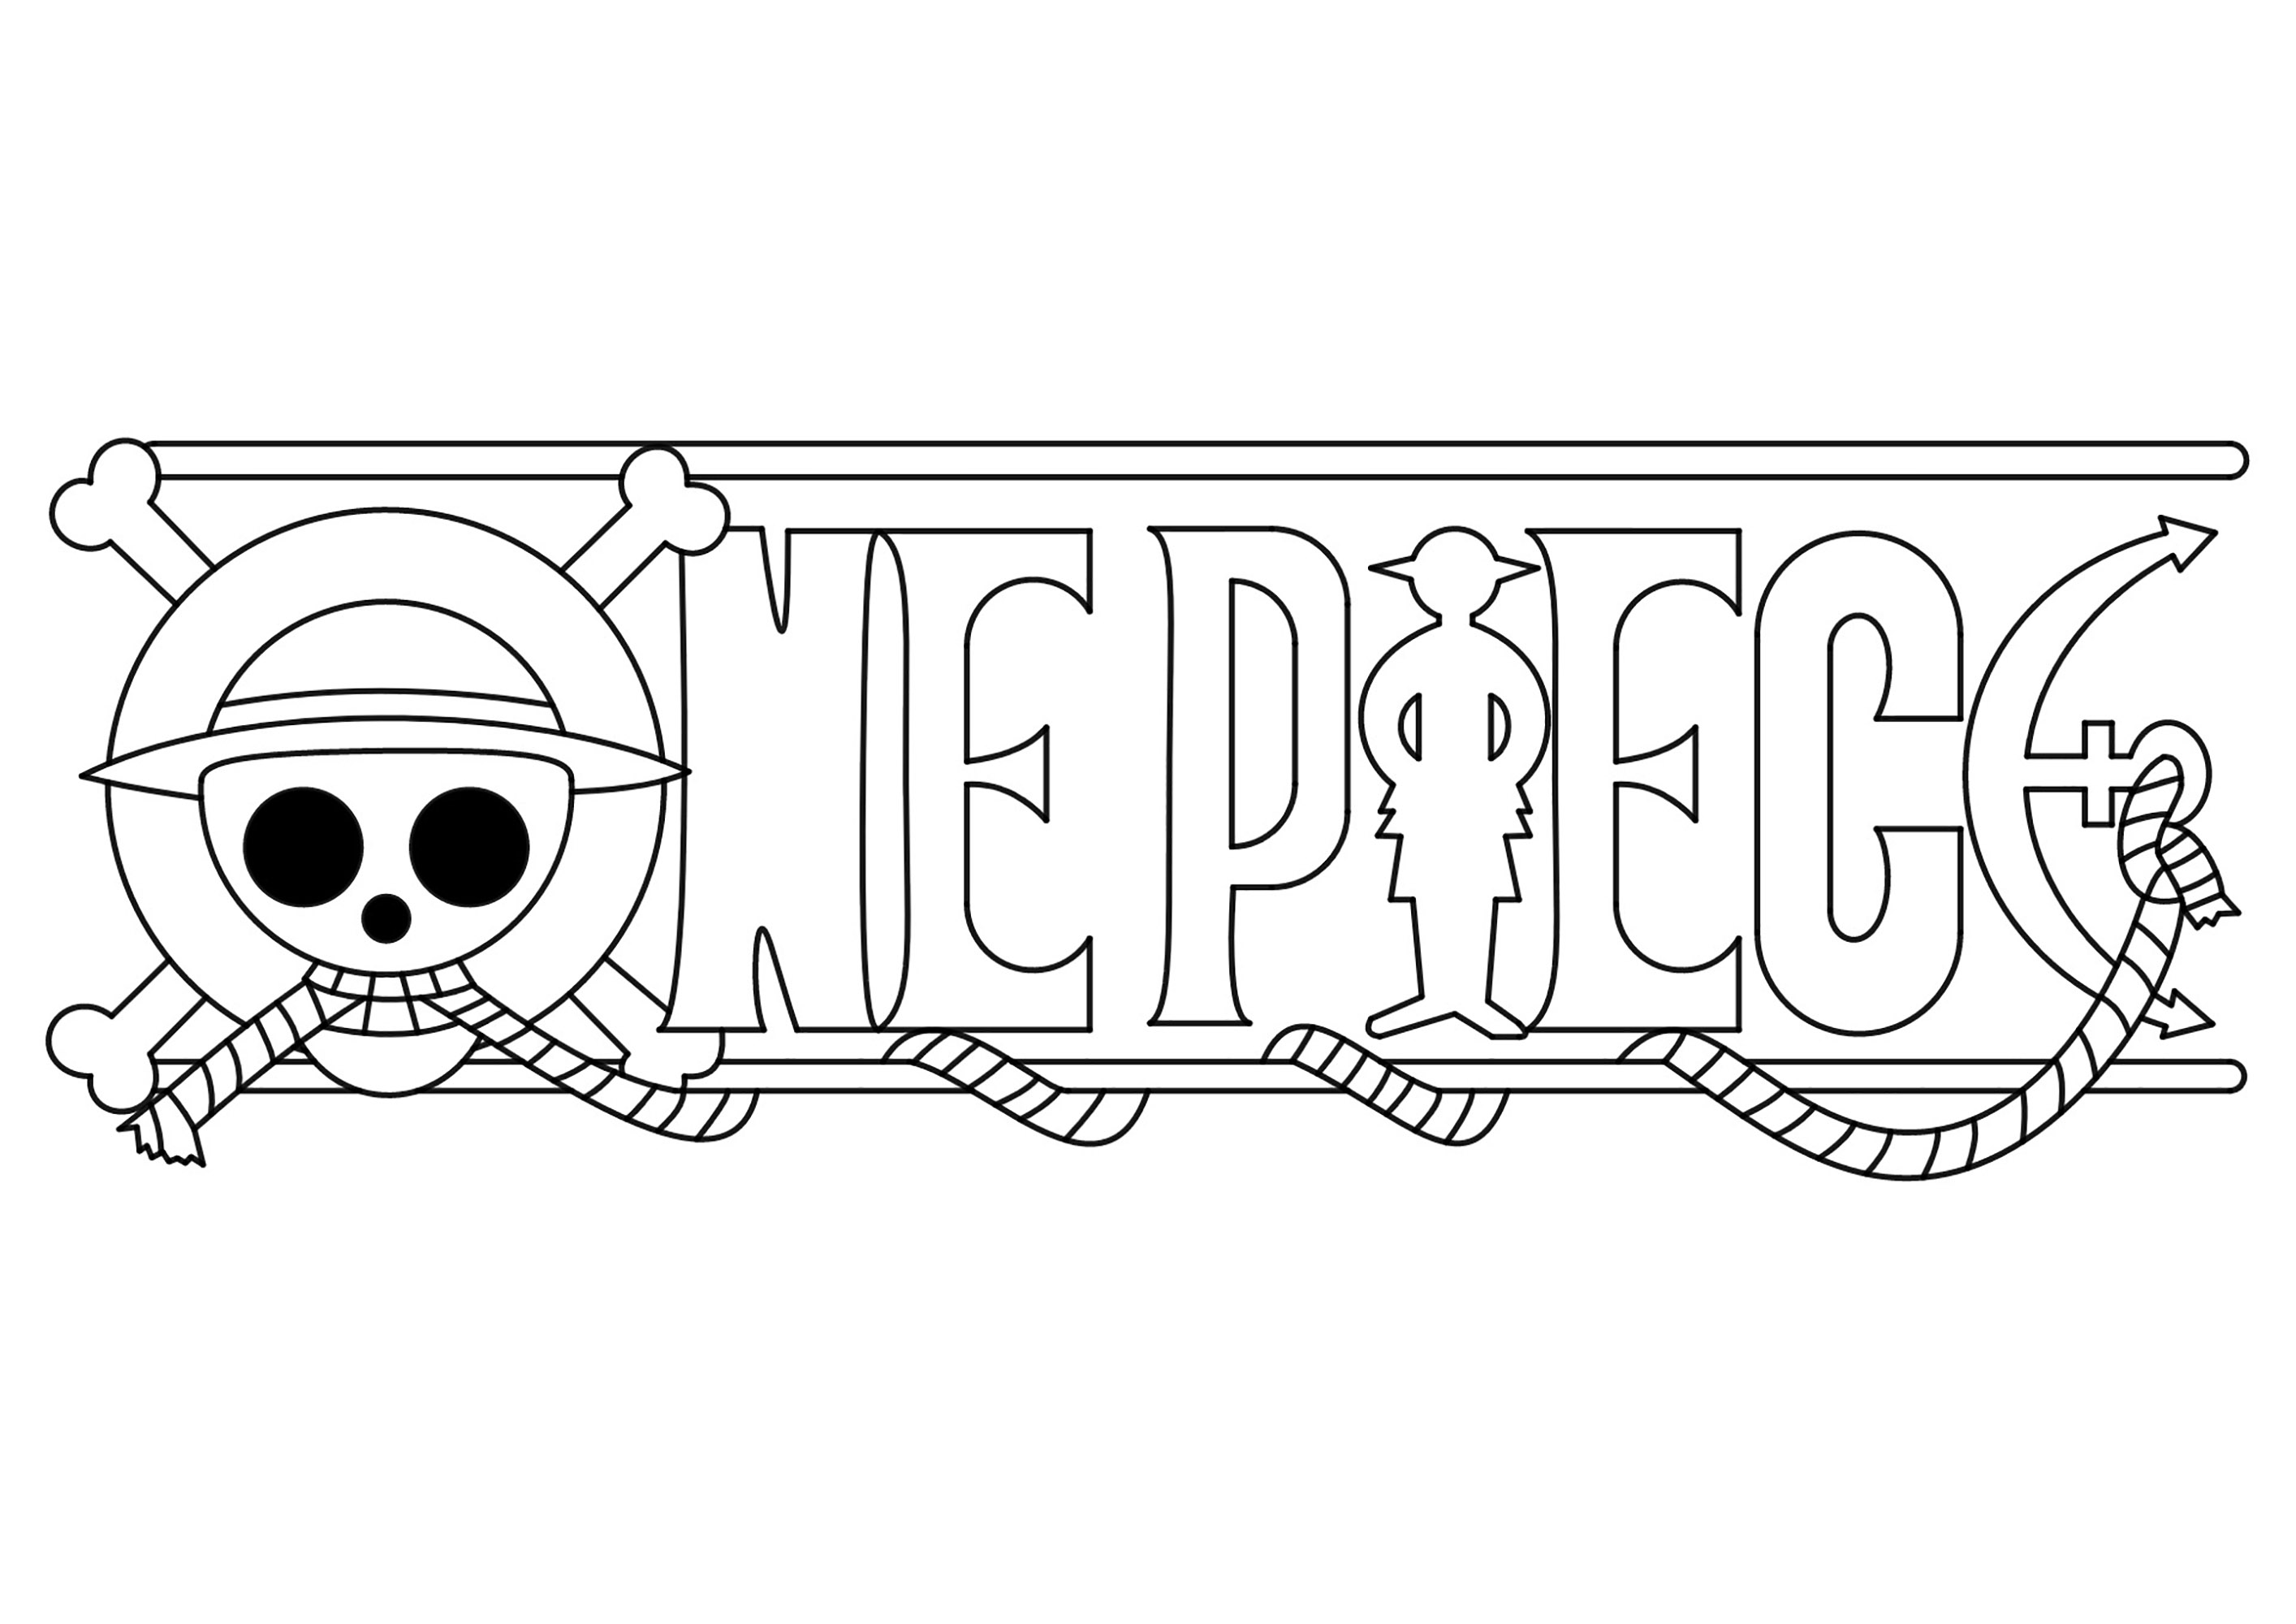 Logotipo de One Piece para colorear